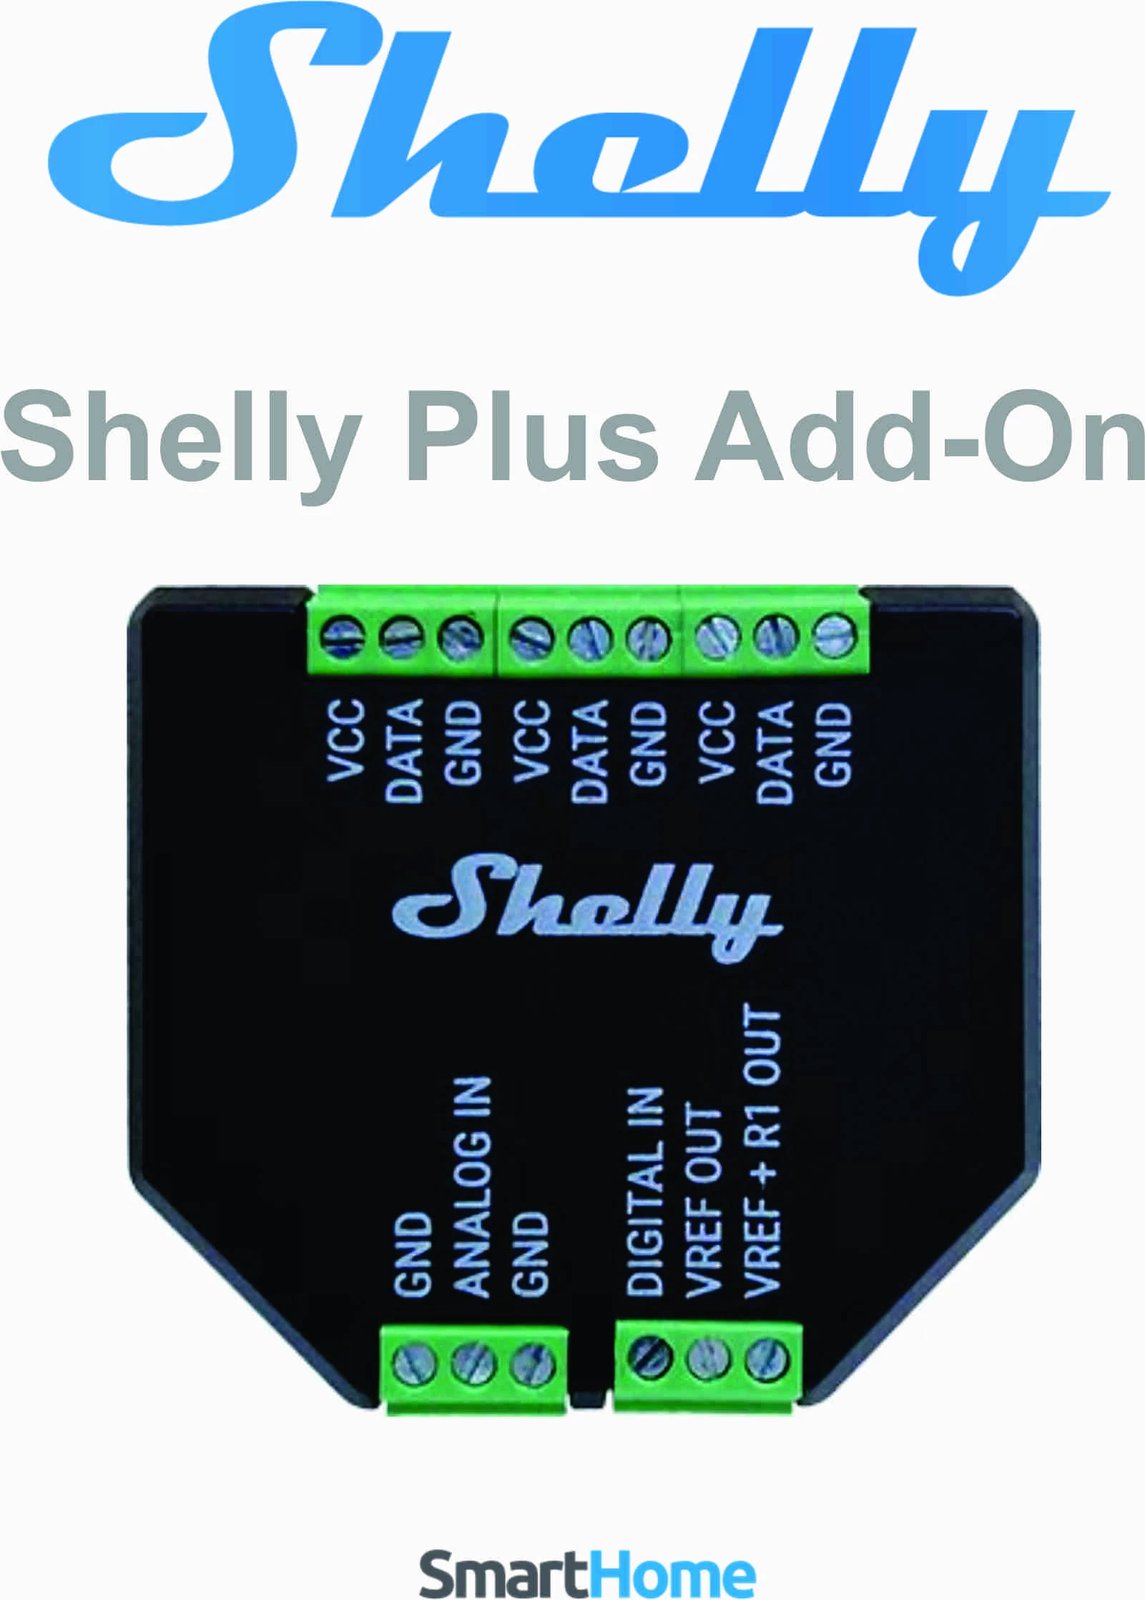 Senzor Shelly Plus Add-On